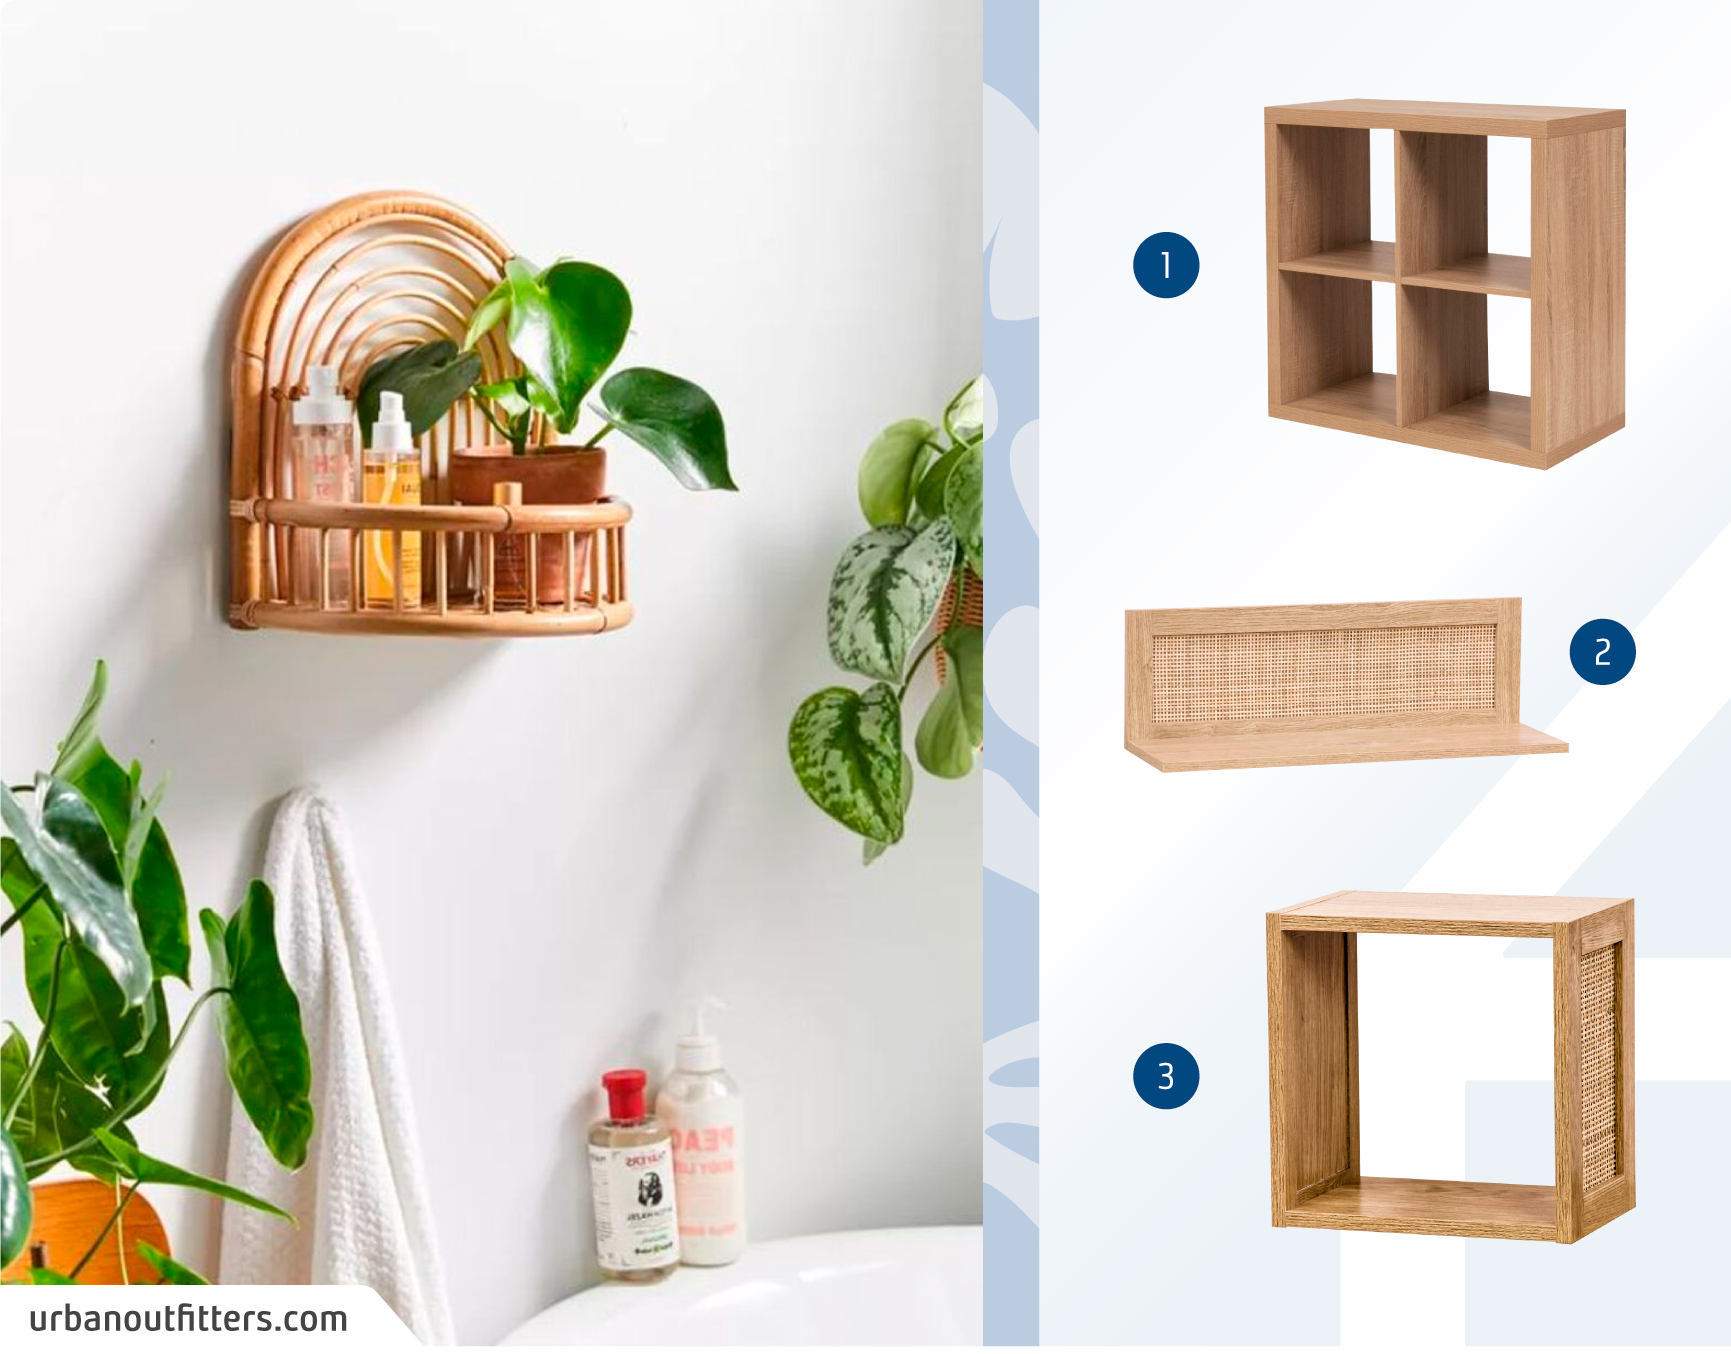 Moodboard de repisas de materiales naturales disponibles en Sodimac, junto a una foto detalle de un baño con una repisa hecha de bambú con una planta y productos higiénicos.